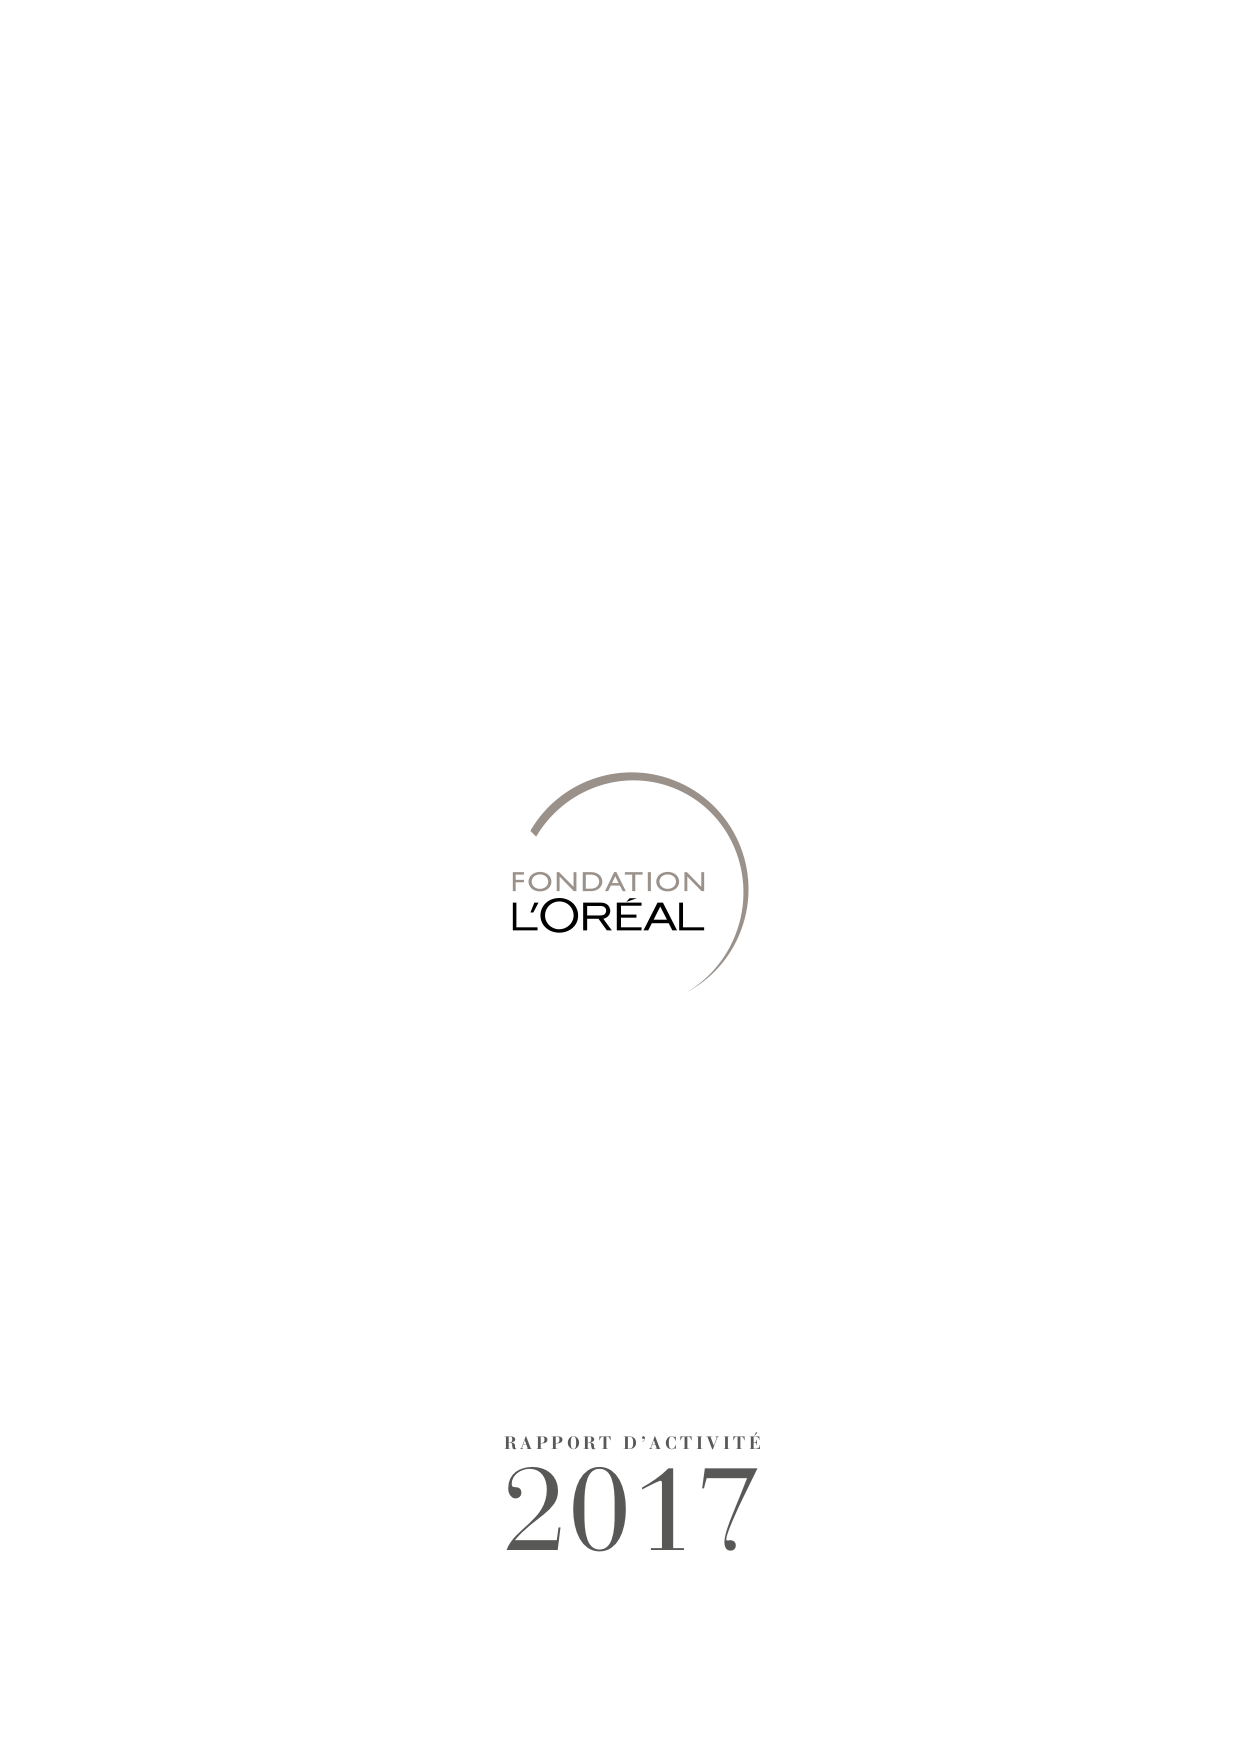 Fondation L'Oréal - Rapport d'activités 2017